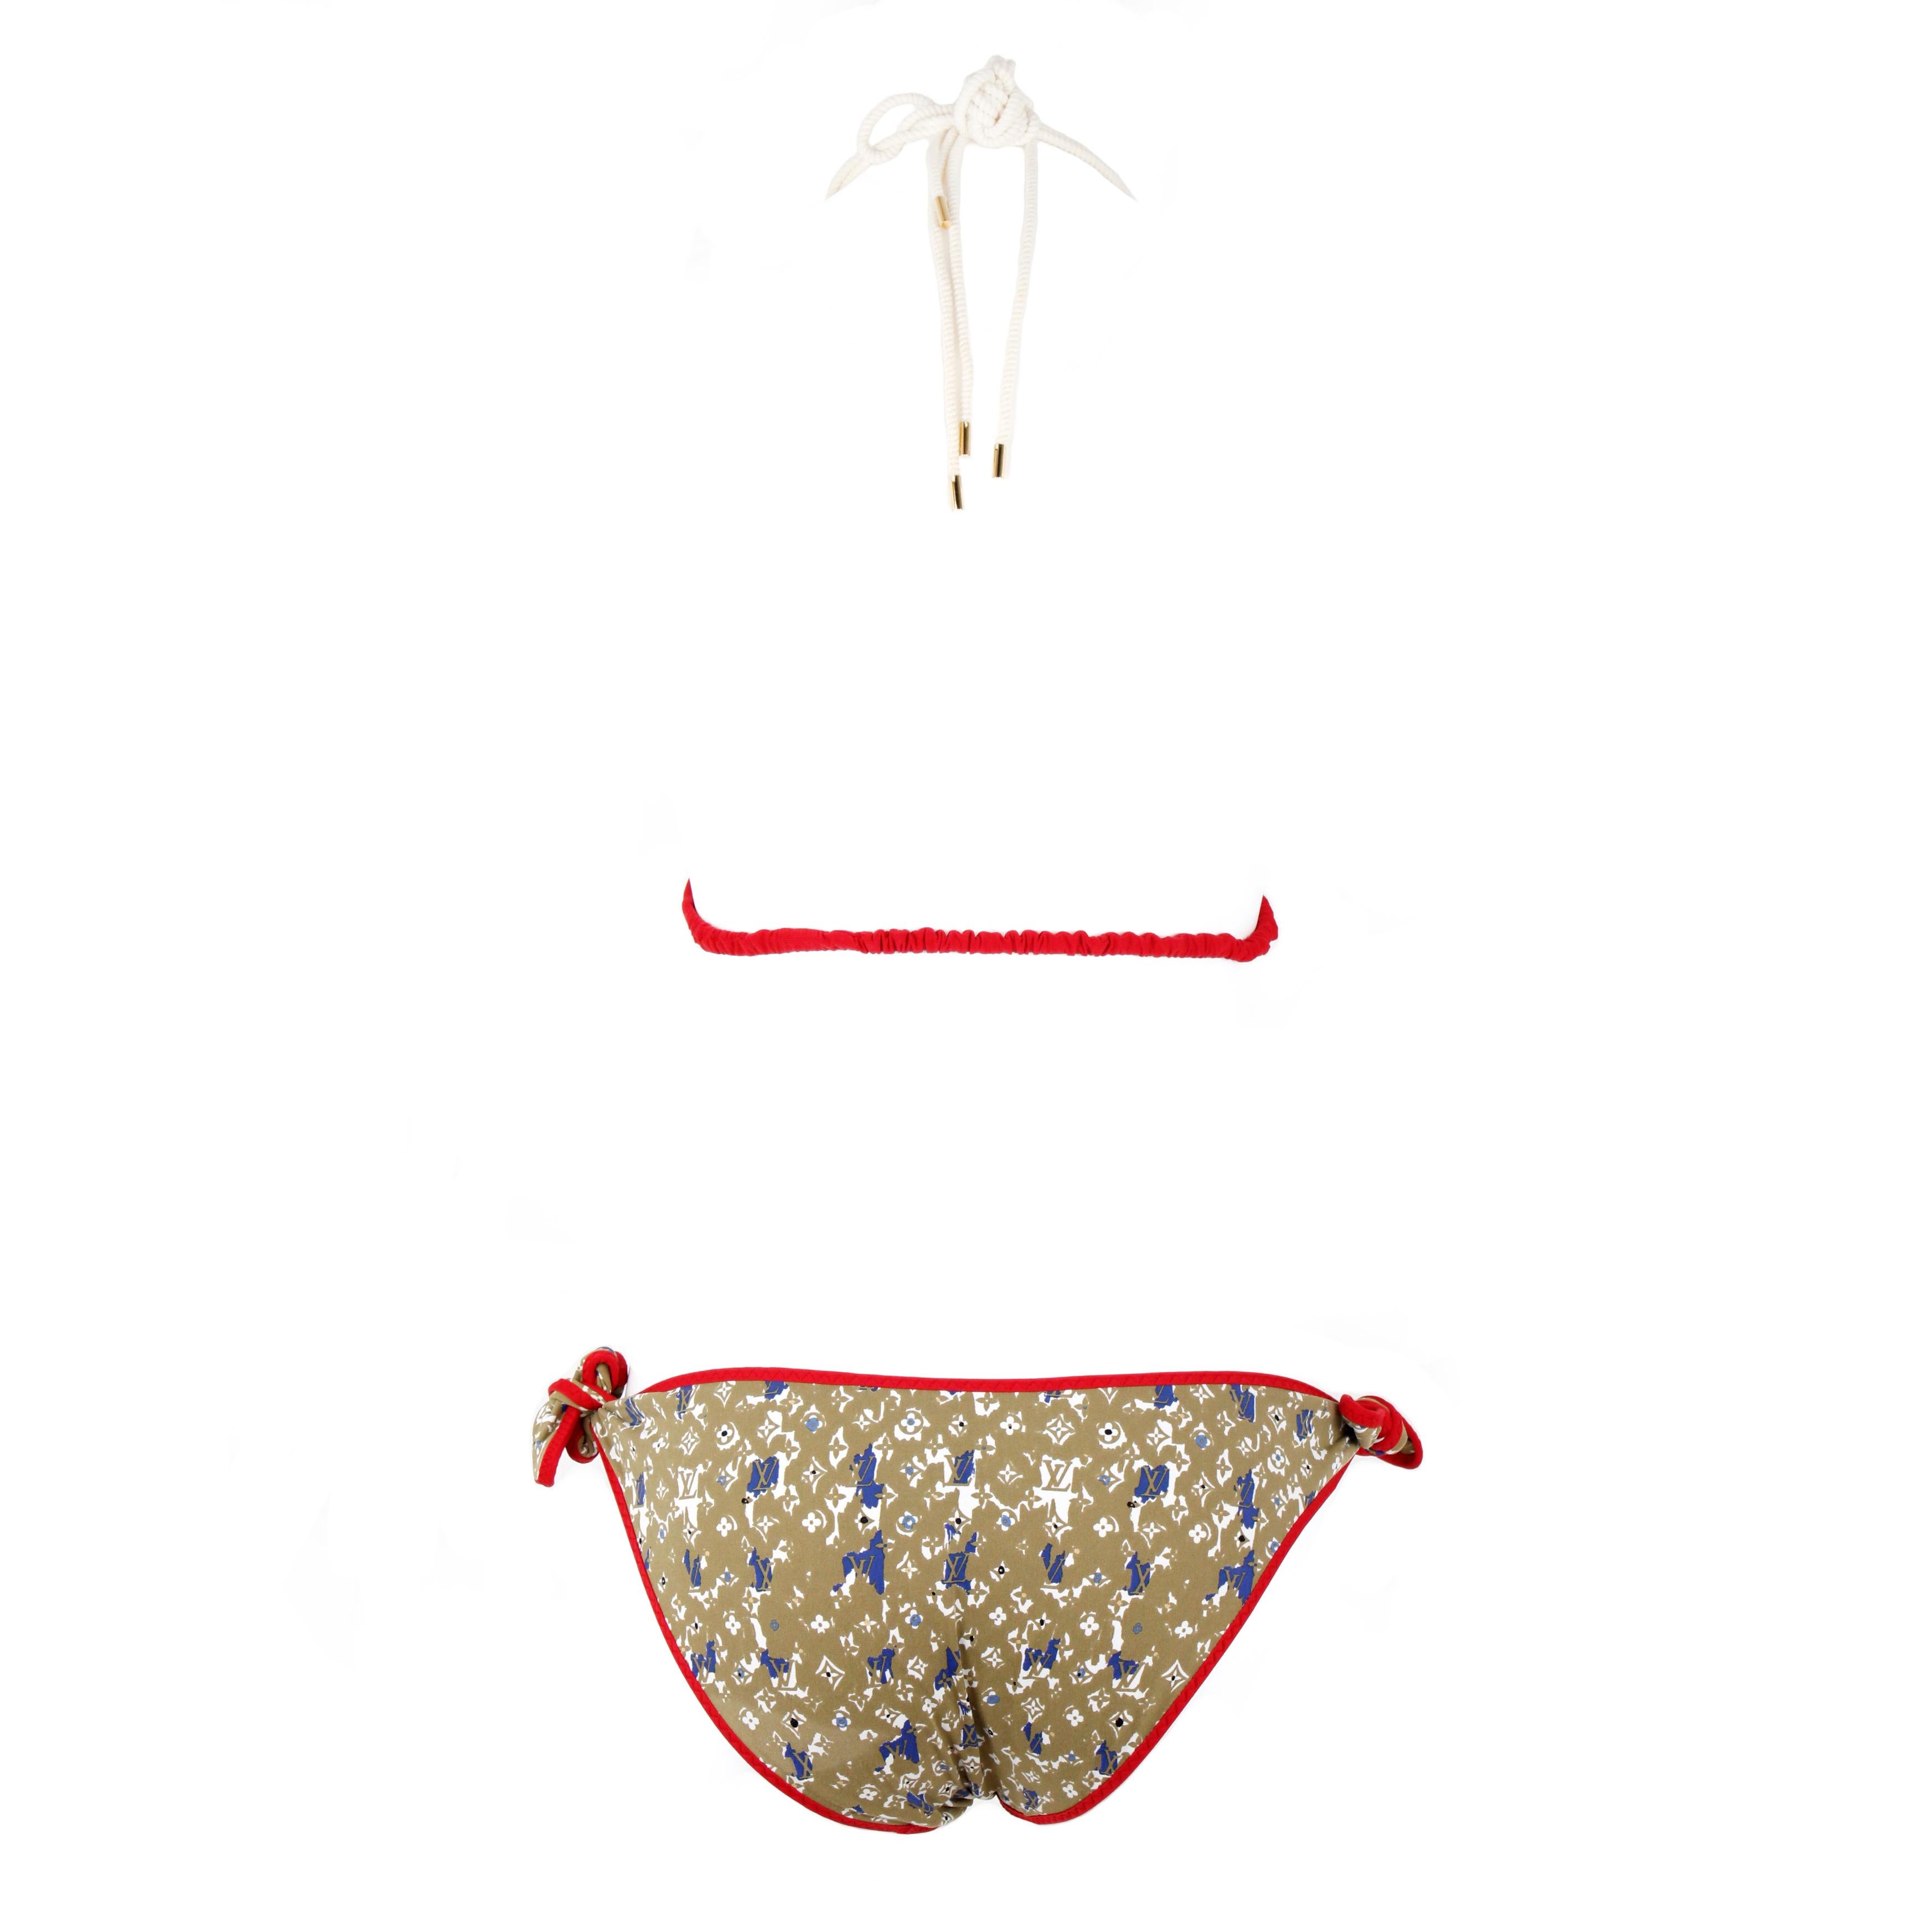 Louis Vuitton Bikini mit mehrfarbigen Monogrammen und goldenen Verzierungen.

Oberteilgröße: 38 FR 
Untere Größe: 40 FR

Bedingung: 
Wirklich gut.